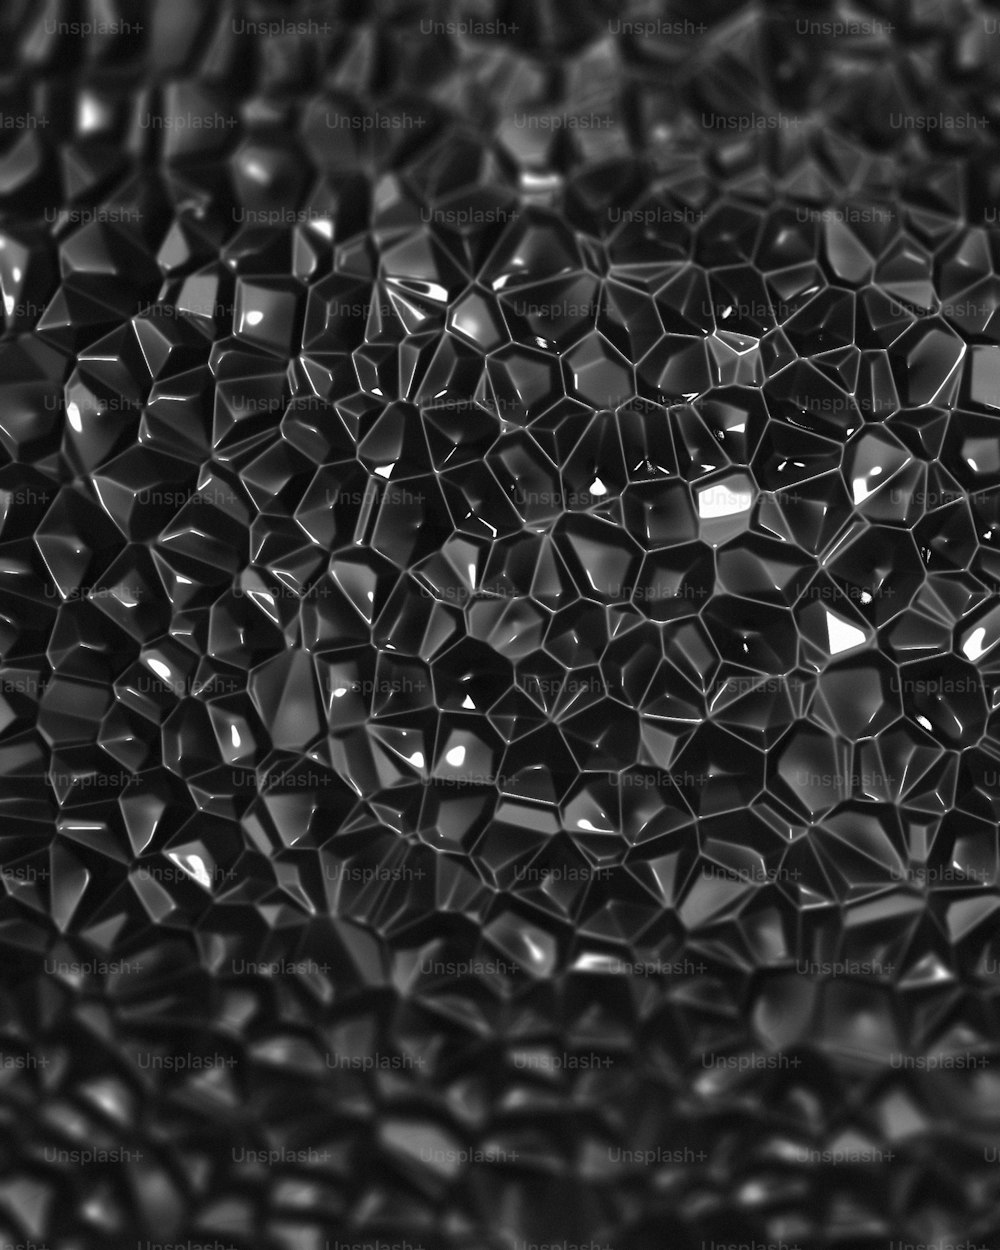 Une photo en noir et blanc d’un bouquet de cubes